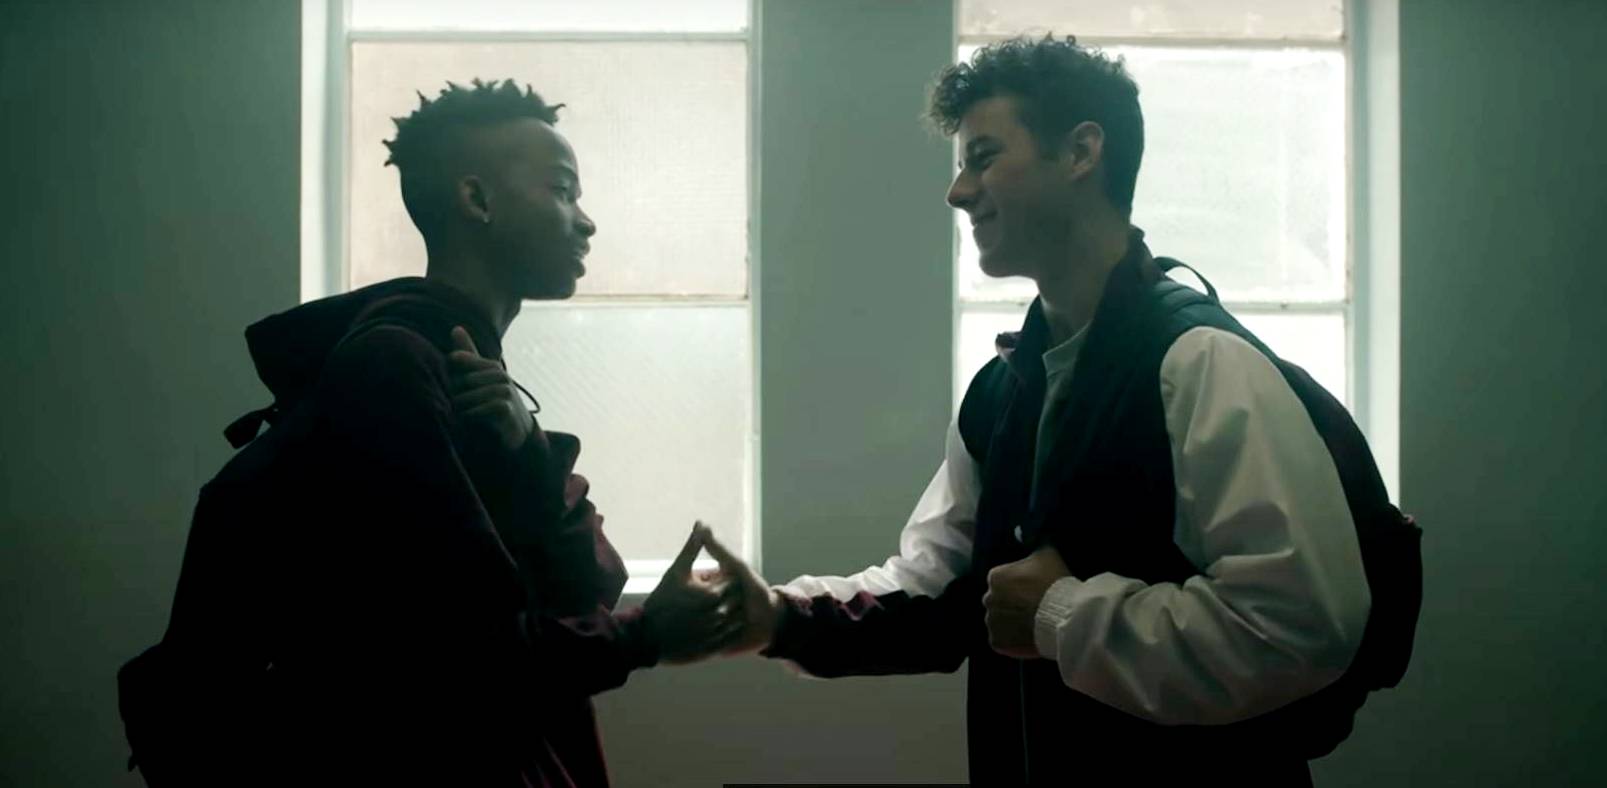 Музыкальный клип о подростке-гее спас сотни жизней в США [Видео]